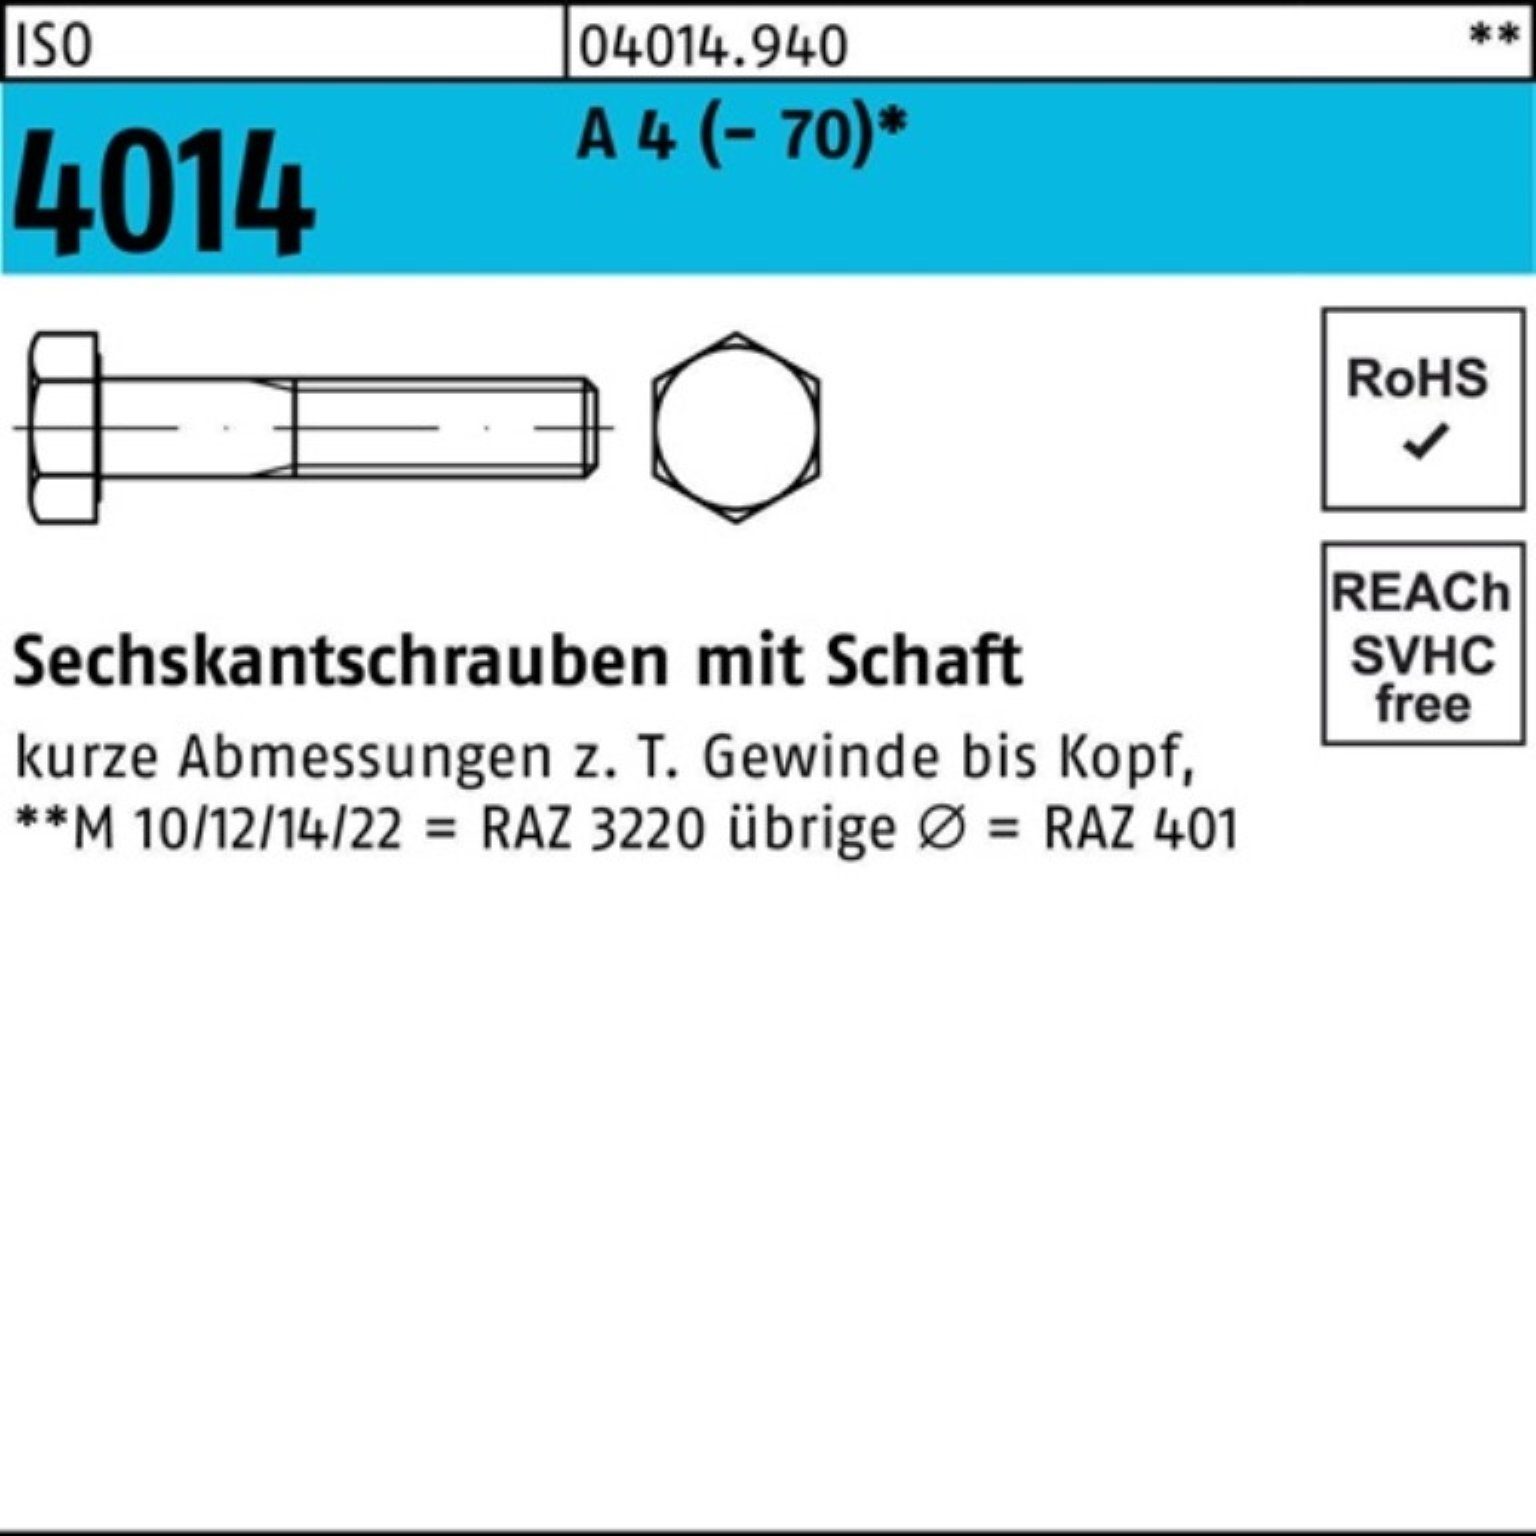 Bufab Sechskantschraube 100er (70) 4 4014 Pack St ISO 10 M22x A Schaft Sechskantschraube 100